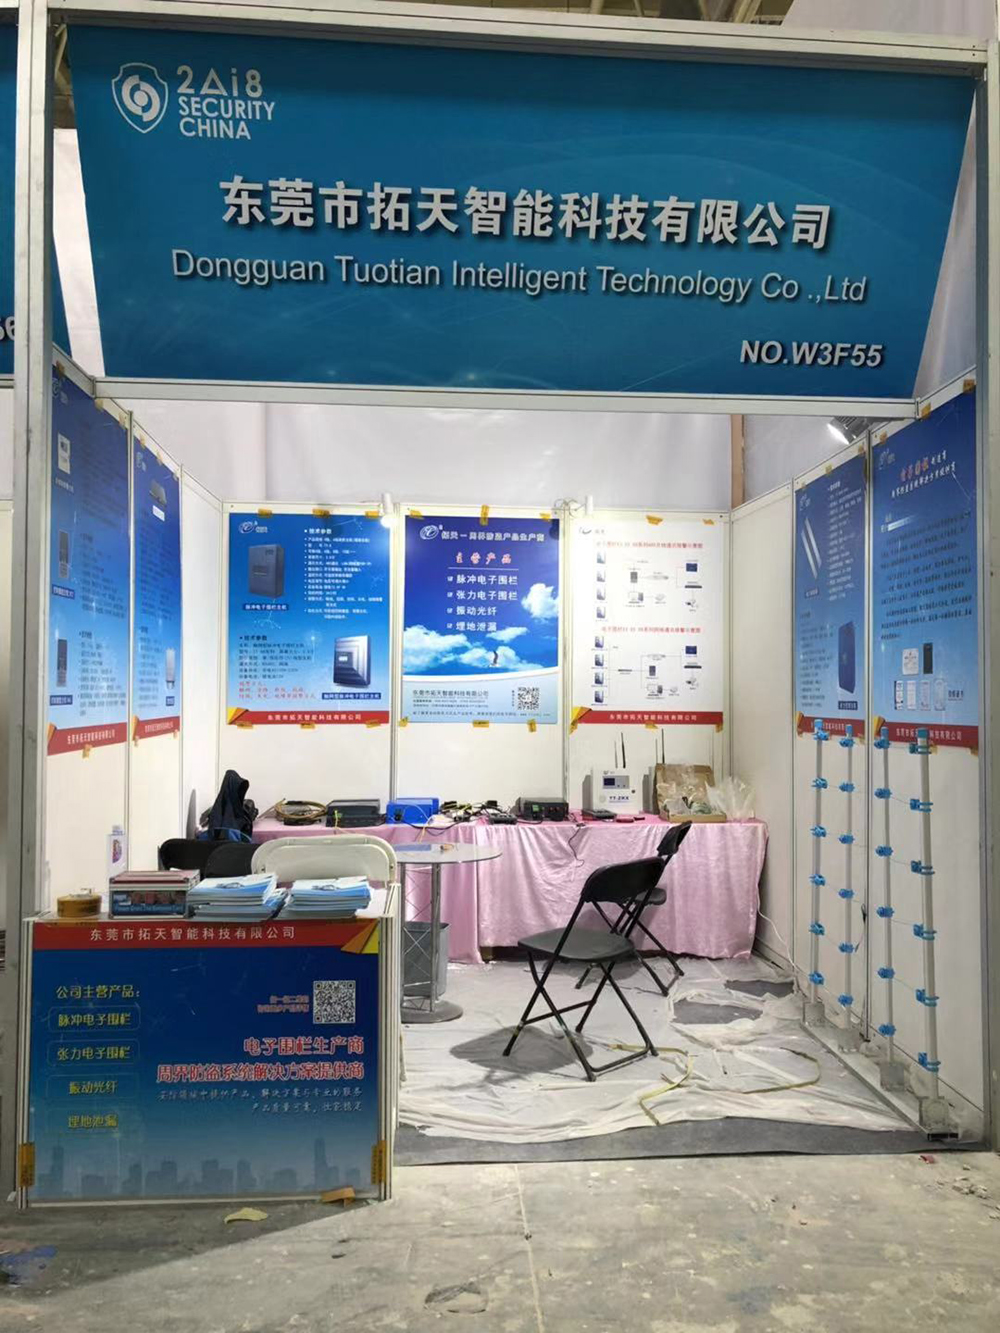 2018年北京社会公共安全博览会